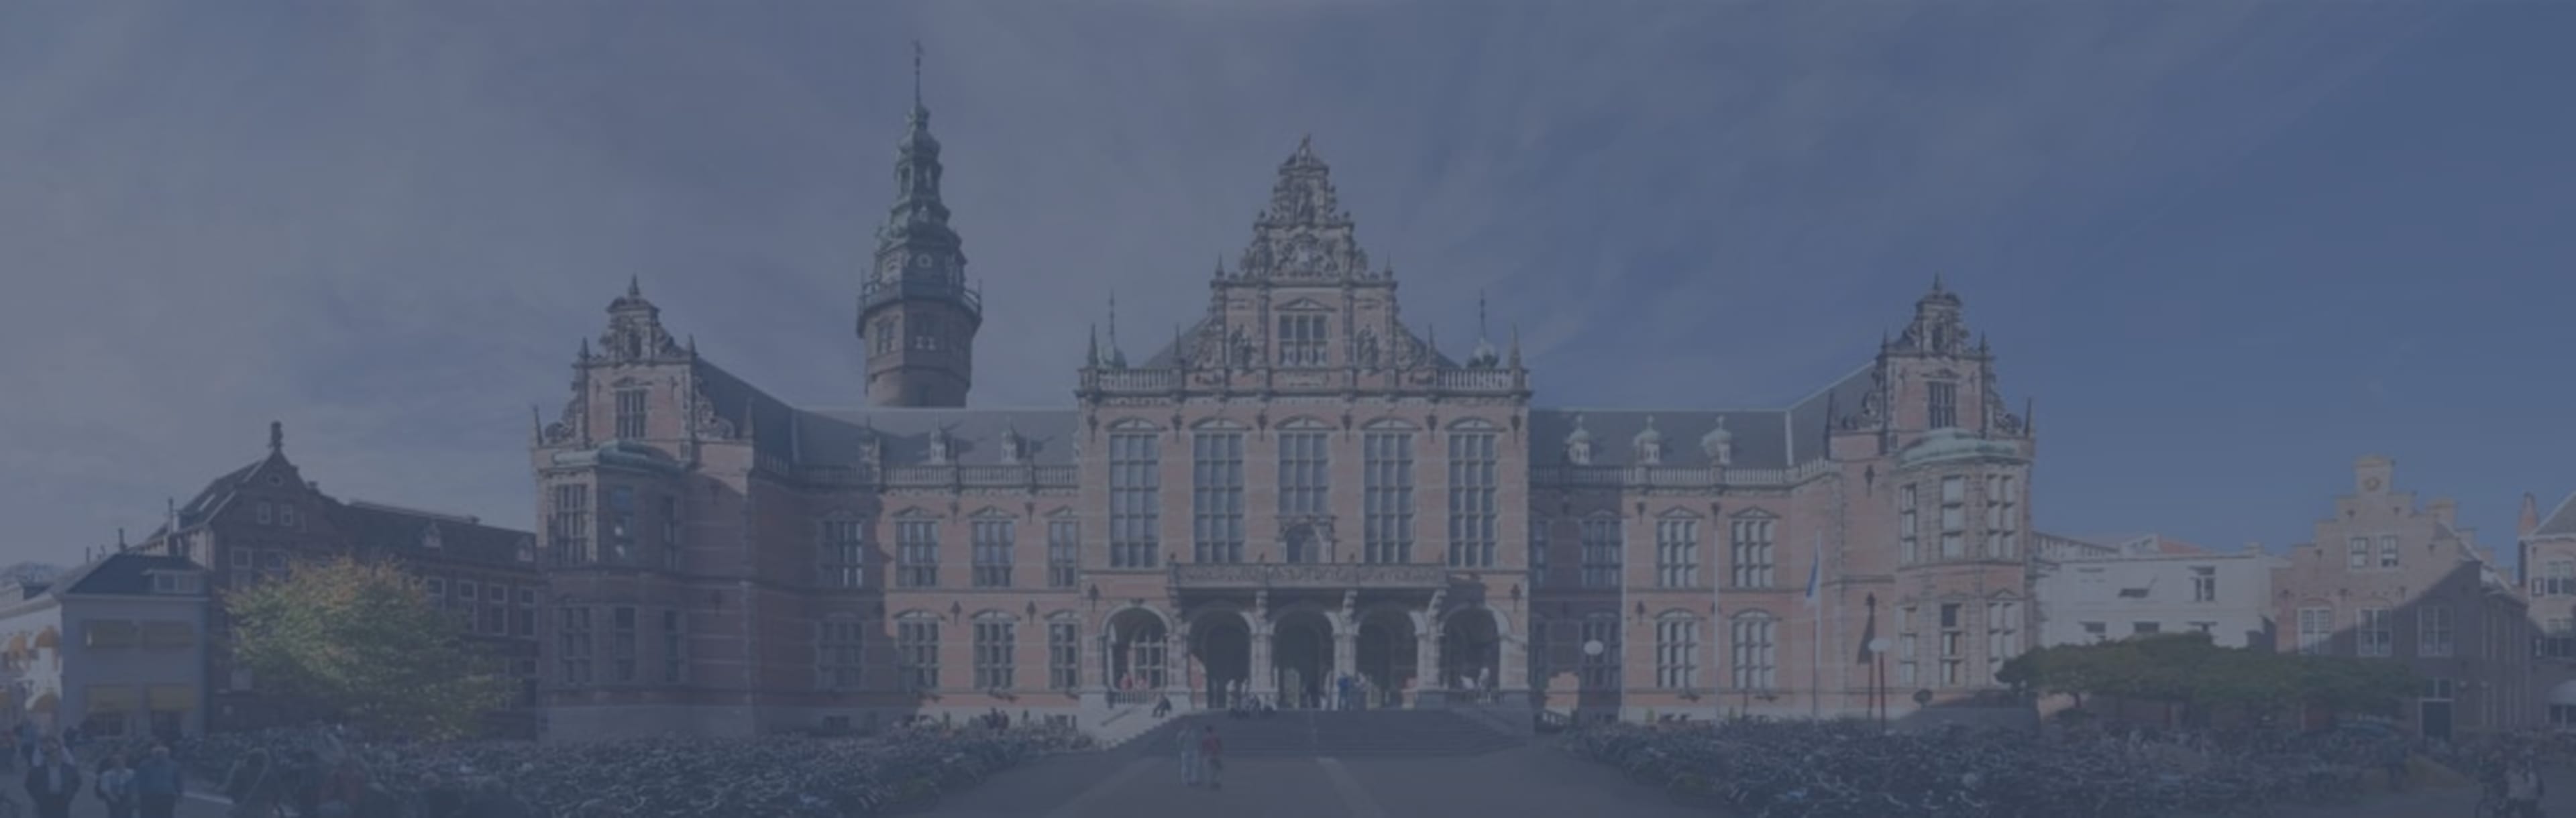 University of Groningen LLM rahvusvahelises inimõiguste valdkonnas